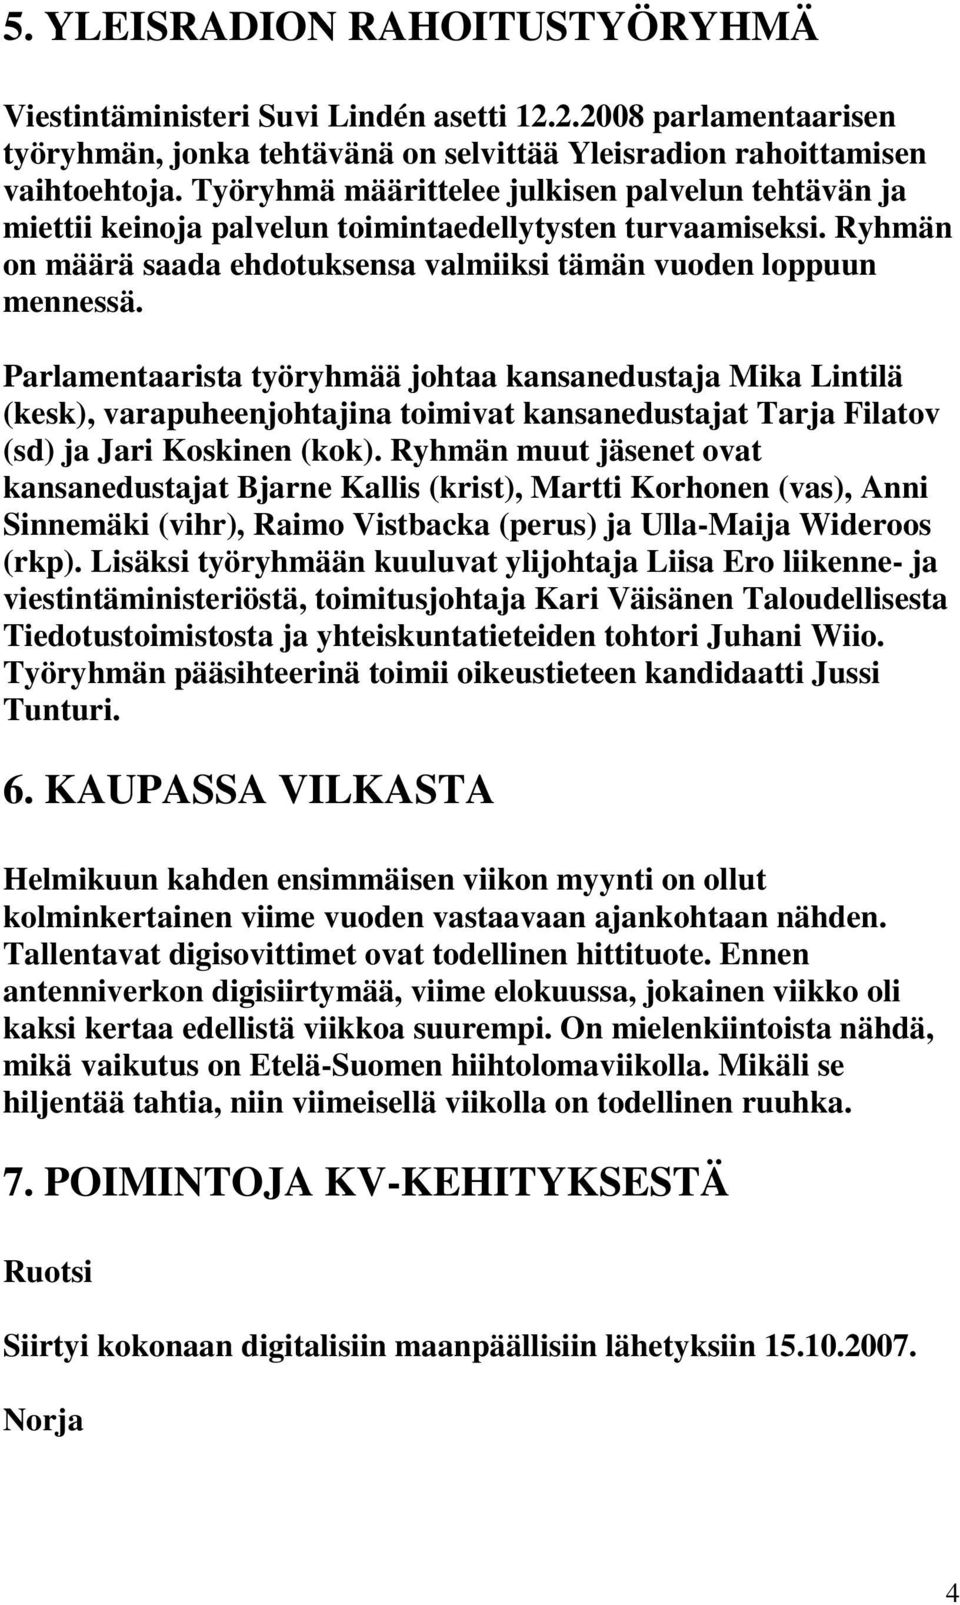 Parlamentaarista työryhmää johtaa kansanedustaja Mika Lintilä (kesk), varapuheenjohtajina toimivat kansanedustajat Tarja Filatov (sd) ja Jari Koskinen (kok).